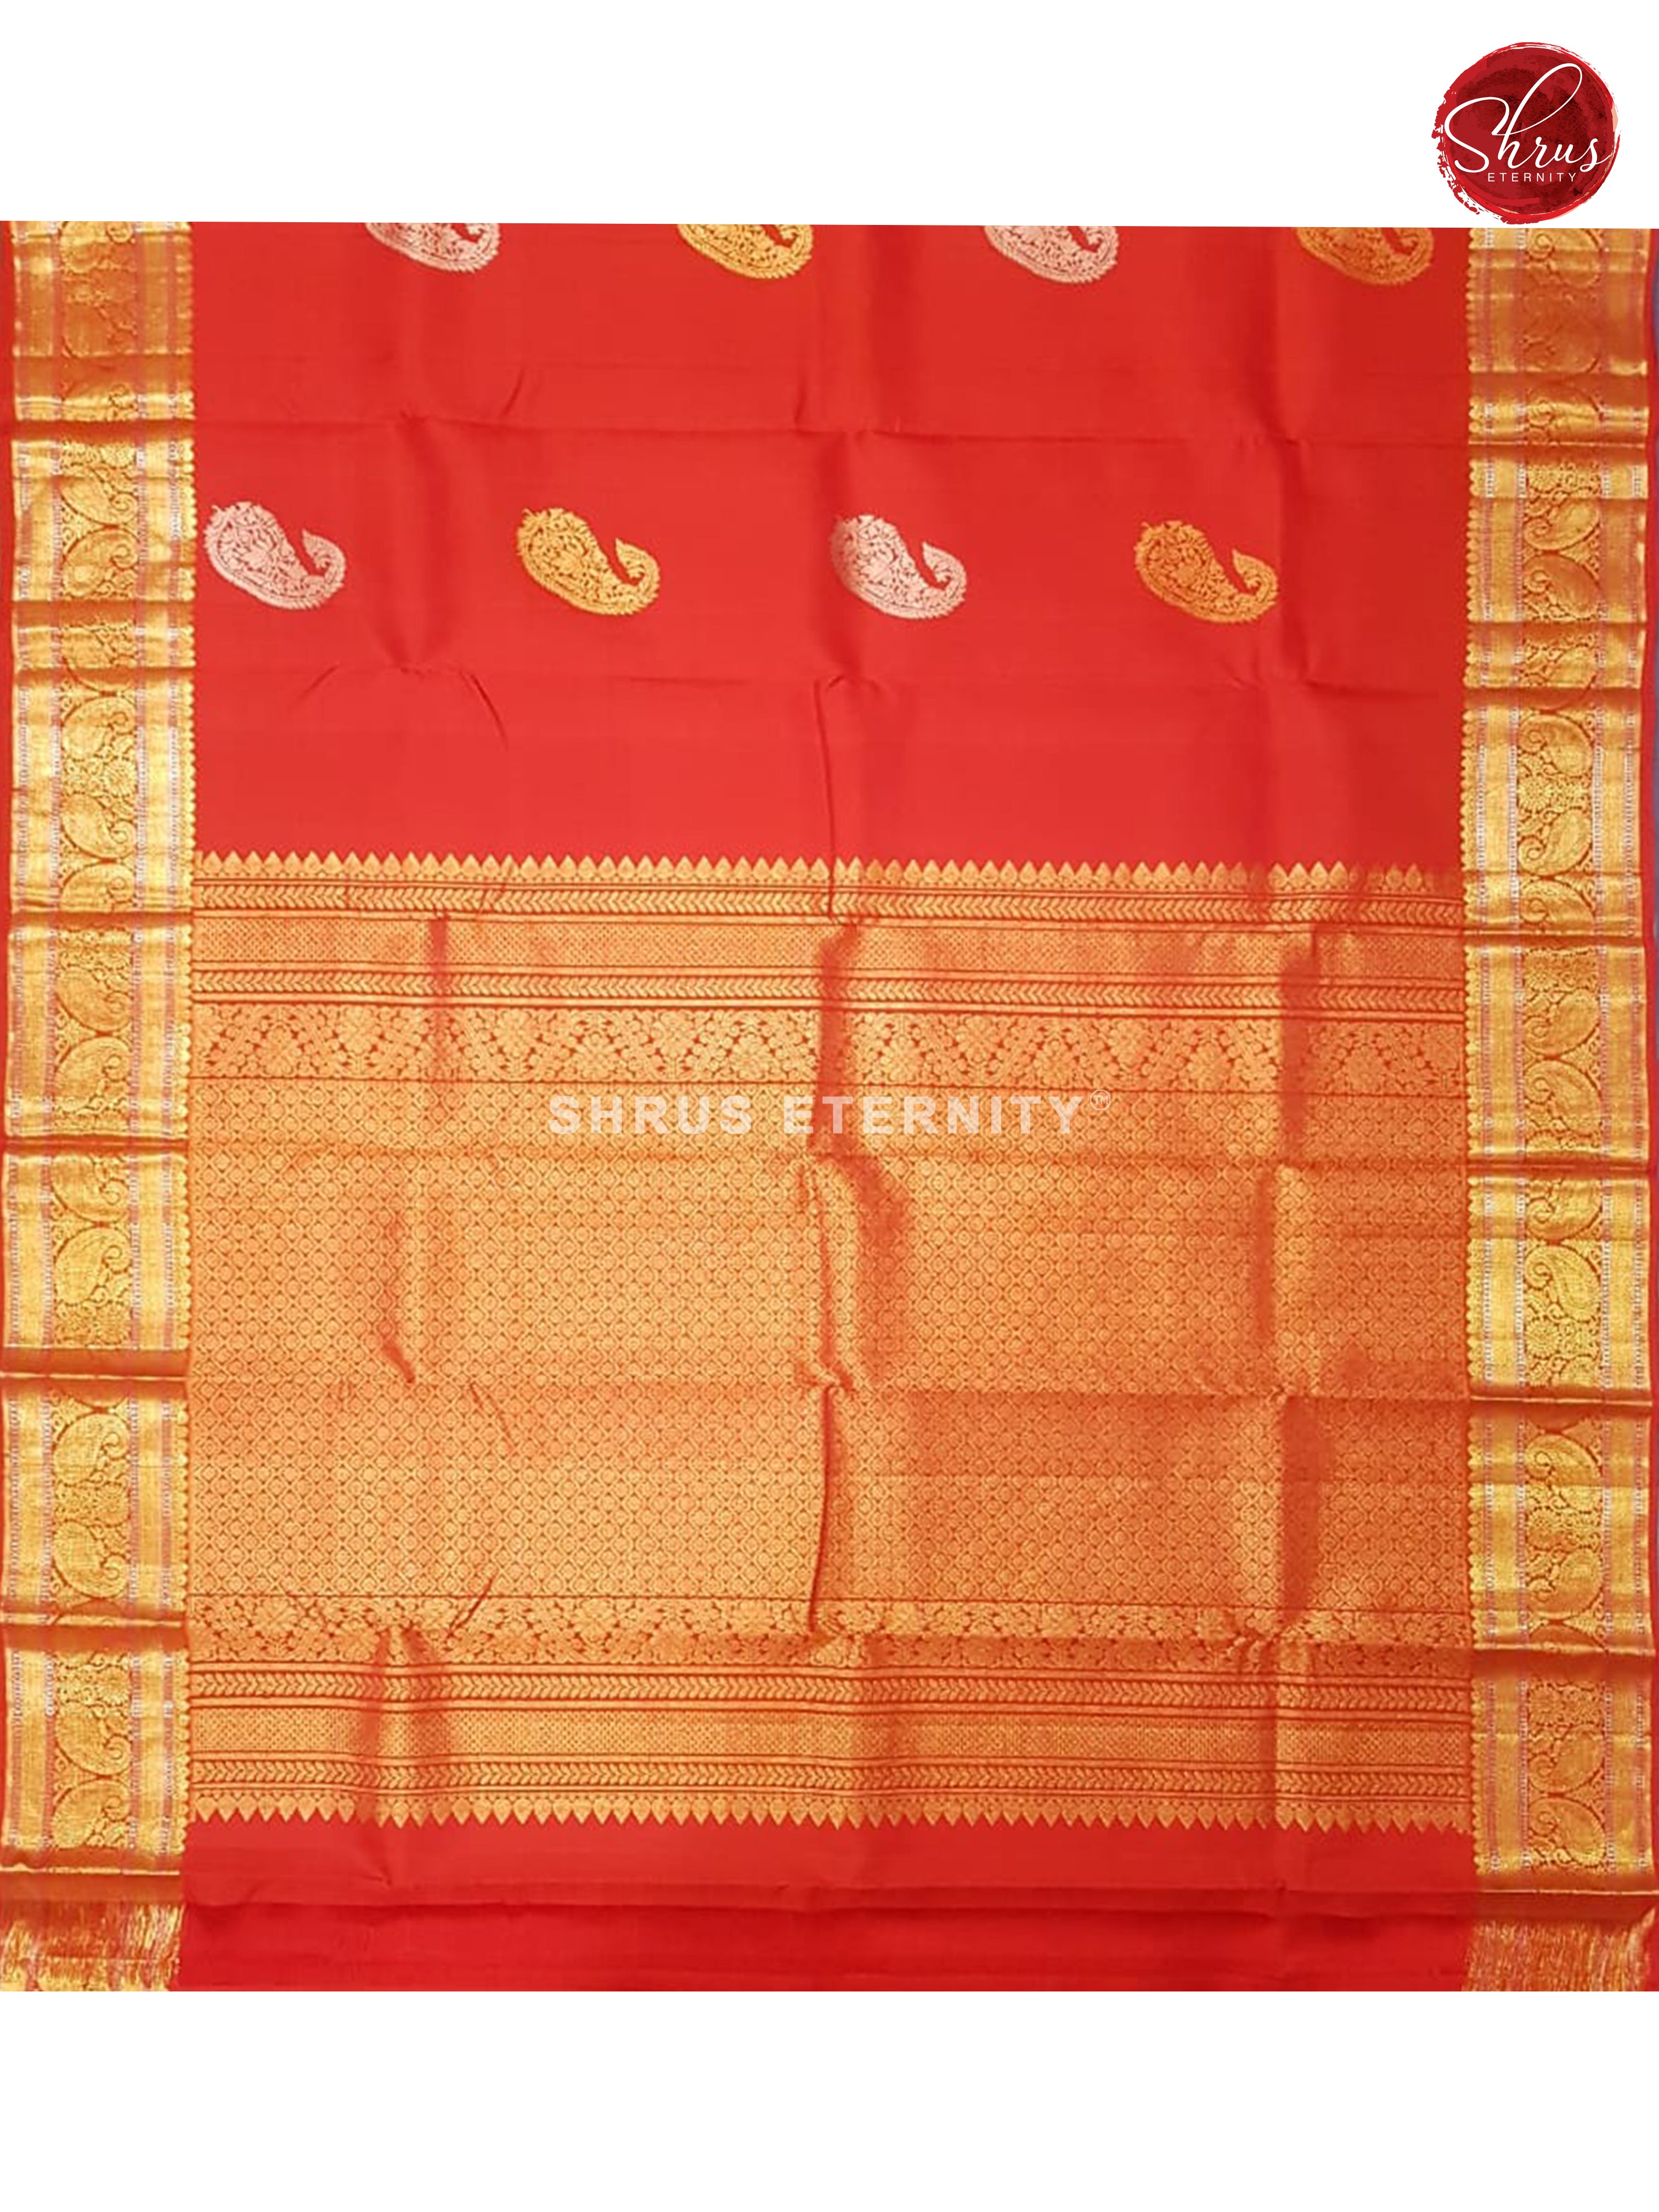 Red (Single Tone) - Kanchipuram Silk - Shop on ShrusEternity.com